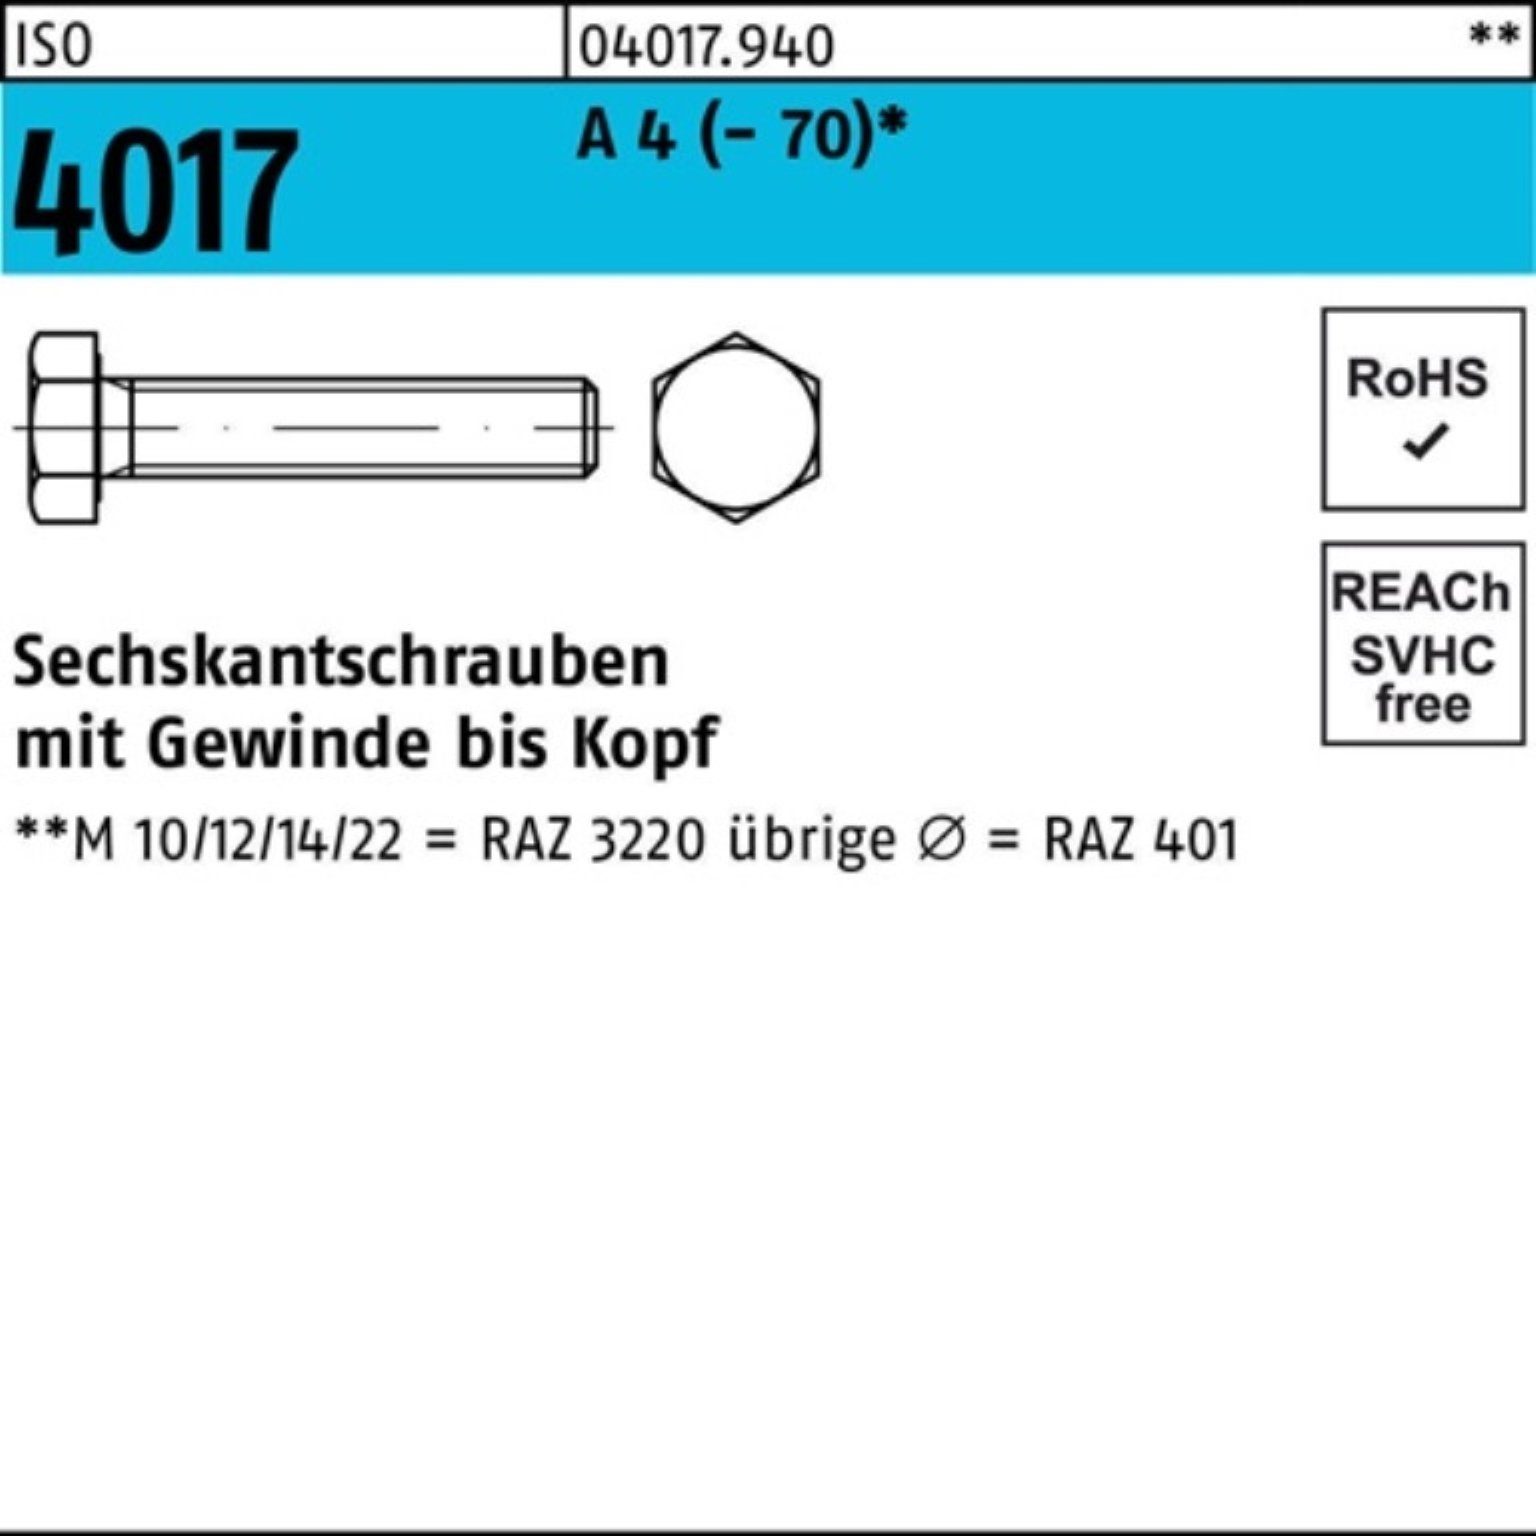 Bufab Sechskantschraube 200er Pack Sechskantschraube ISO 4017 VG M8x 18 A 4 (70) 200 Stück